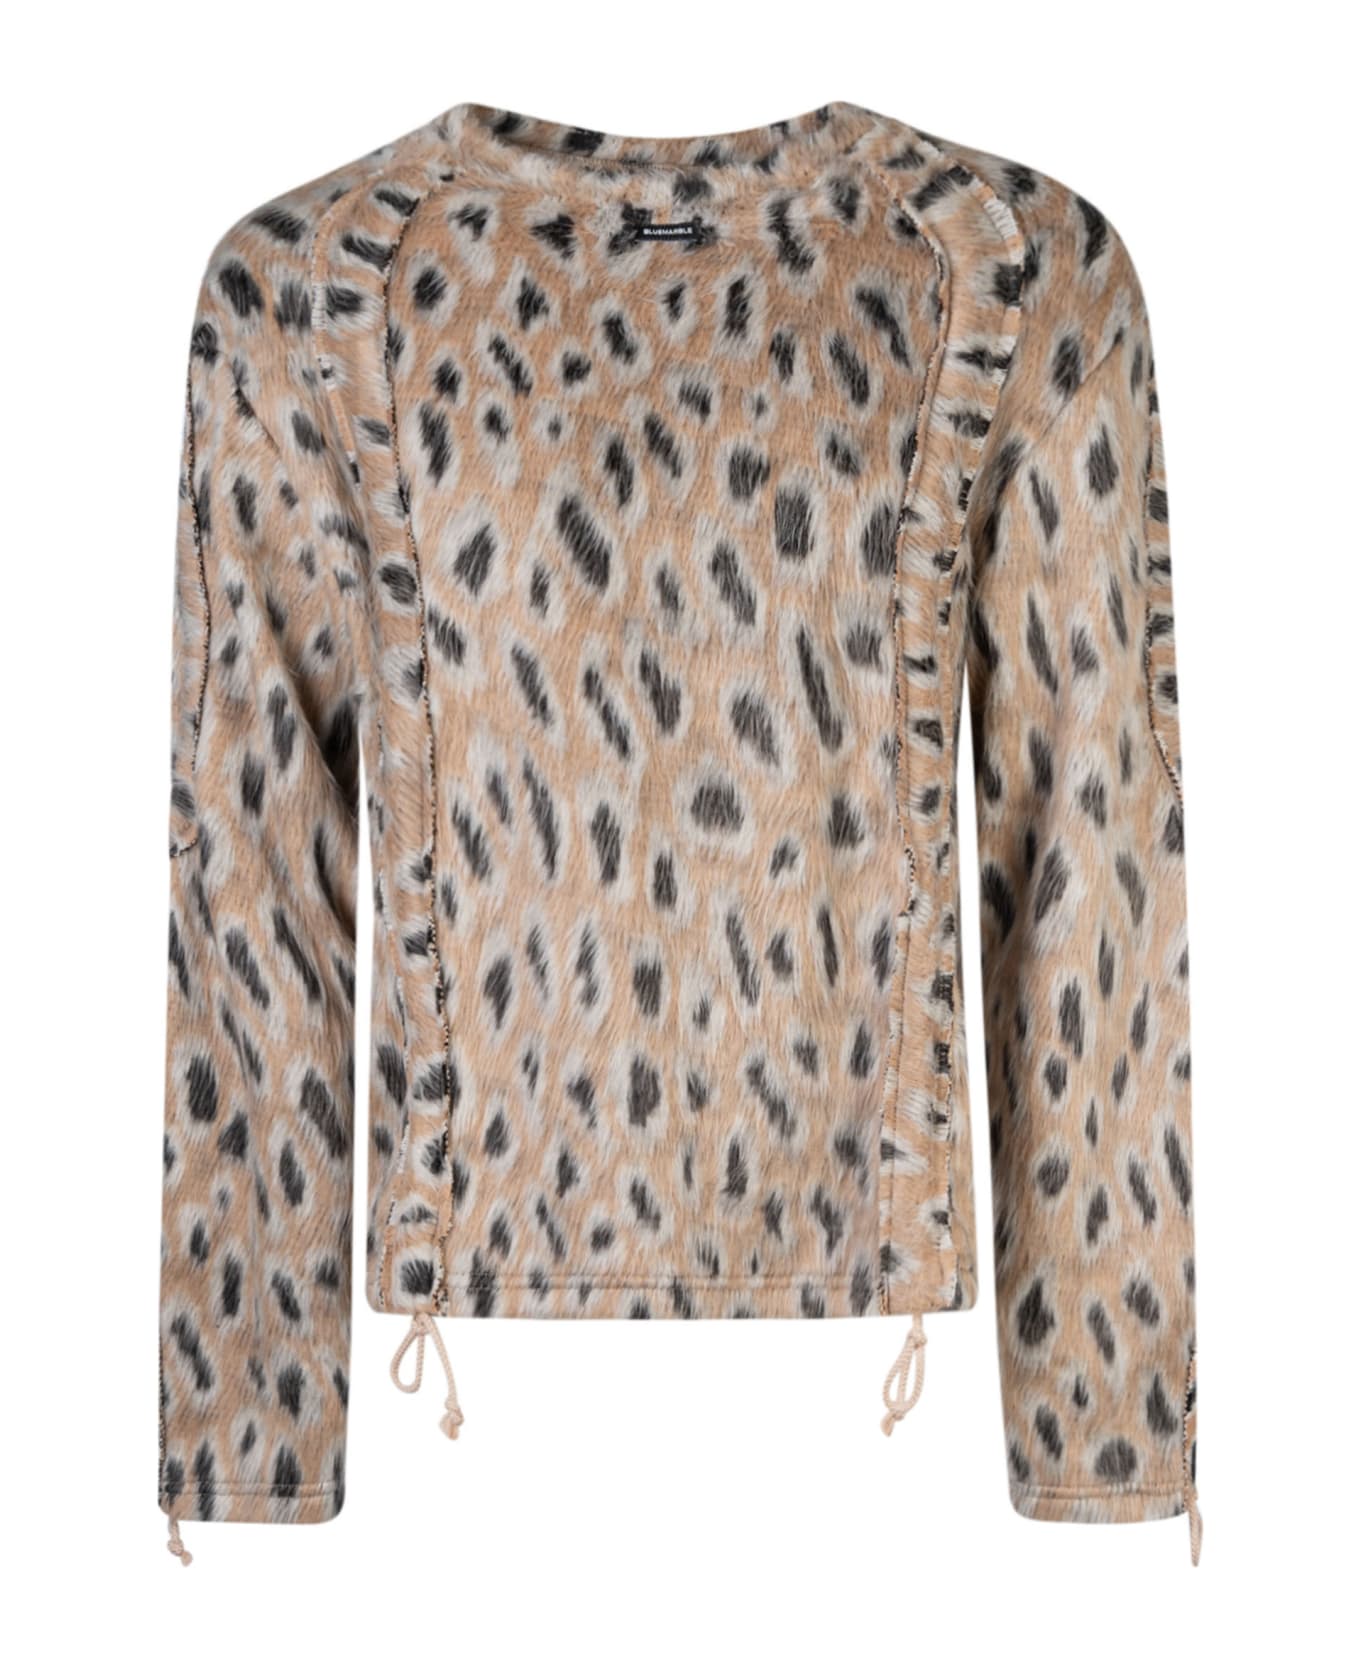 Bluemarble Furry Leopard Sweater - Furry Leopard